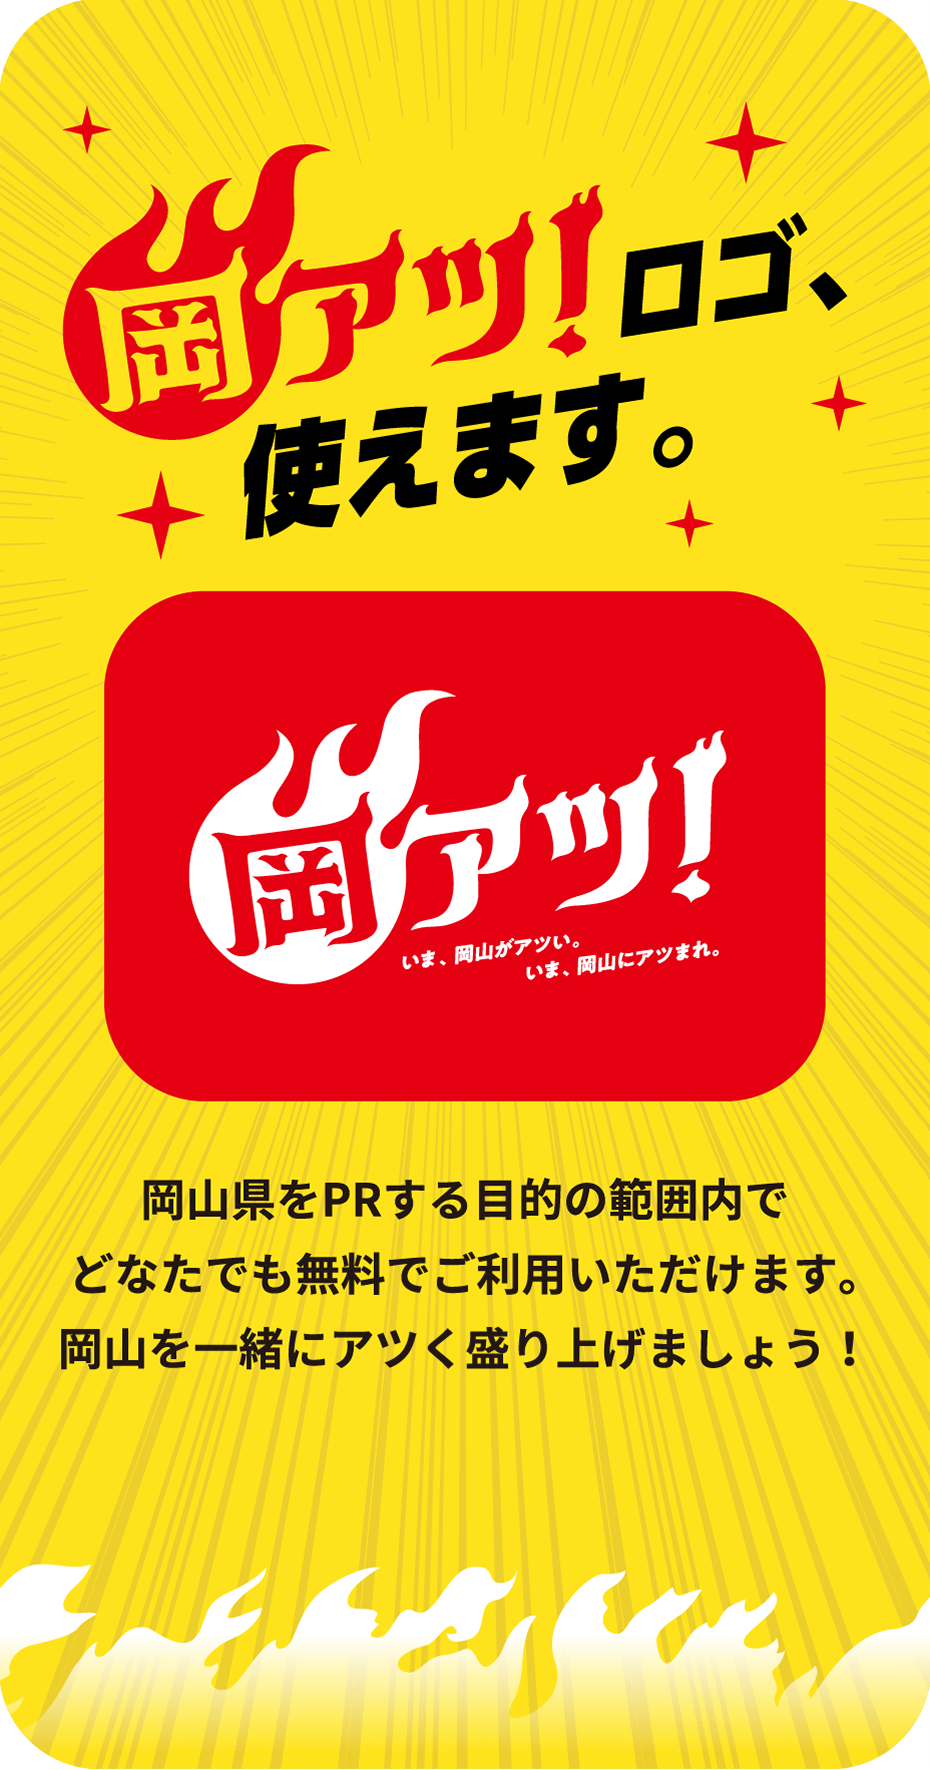 岡アツ！ロゴ、使えます。岡山県をPRする目的の範囲内でどなたでも無料でご利用いただけます。岡山を一緒にアツく盛り上げましょう！